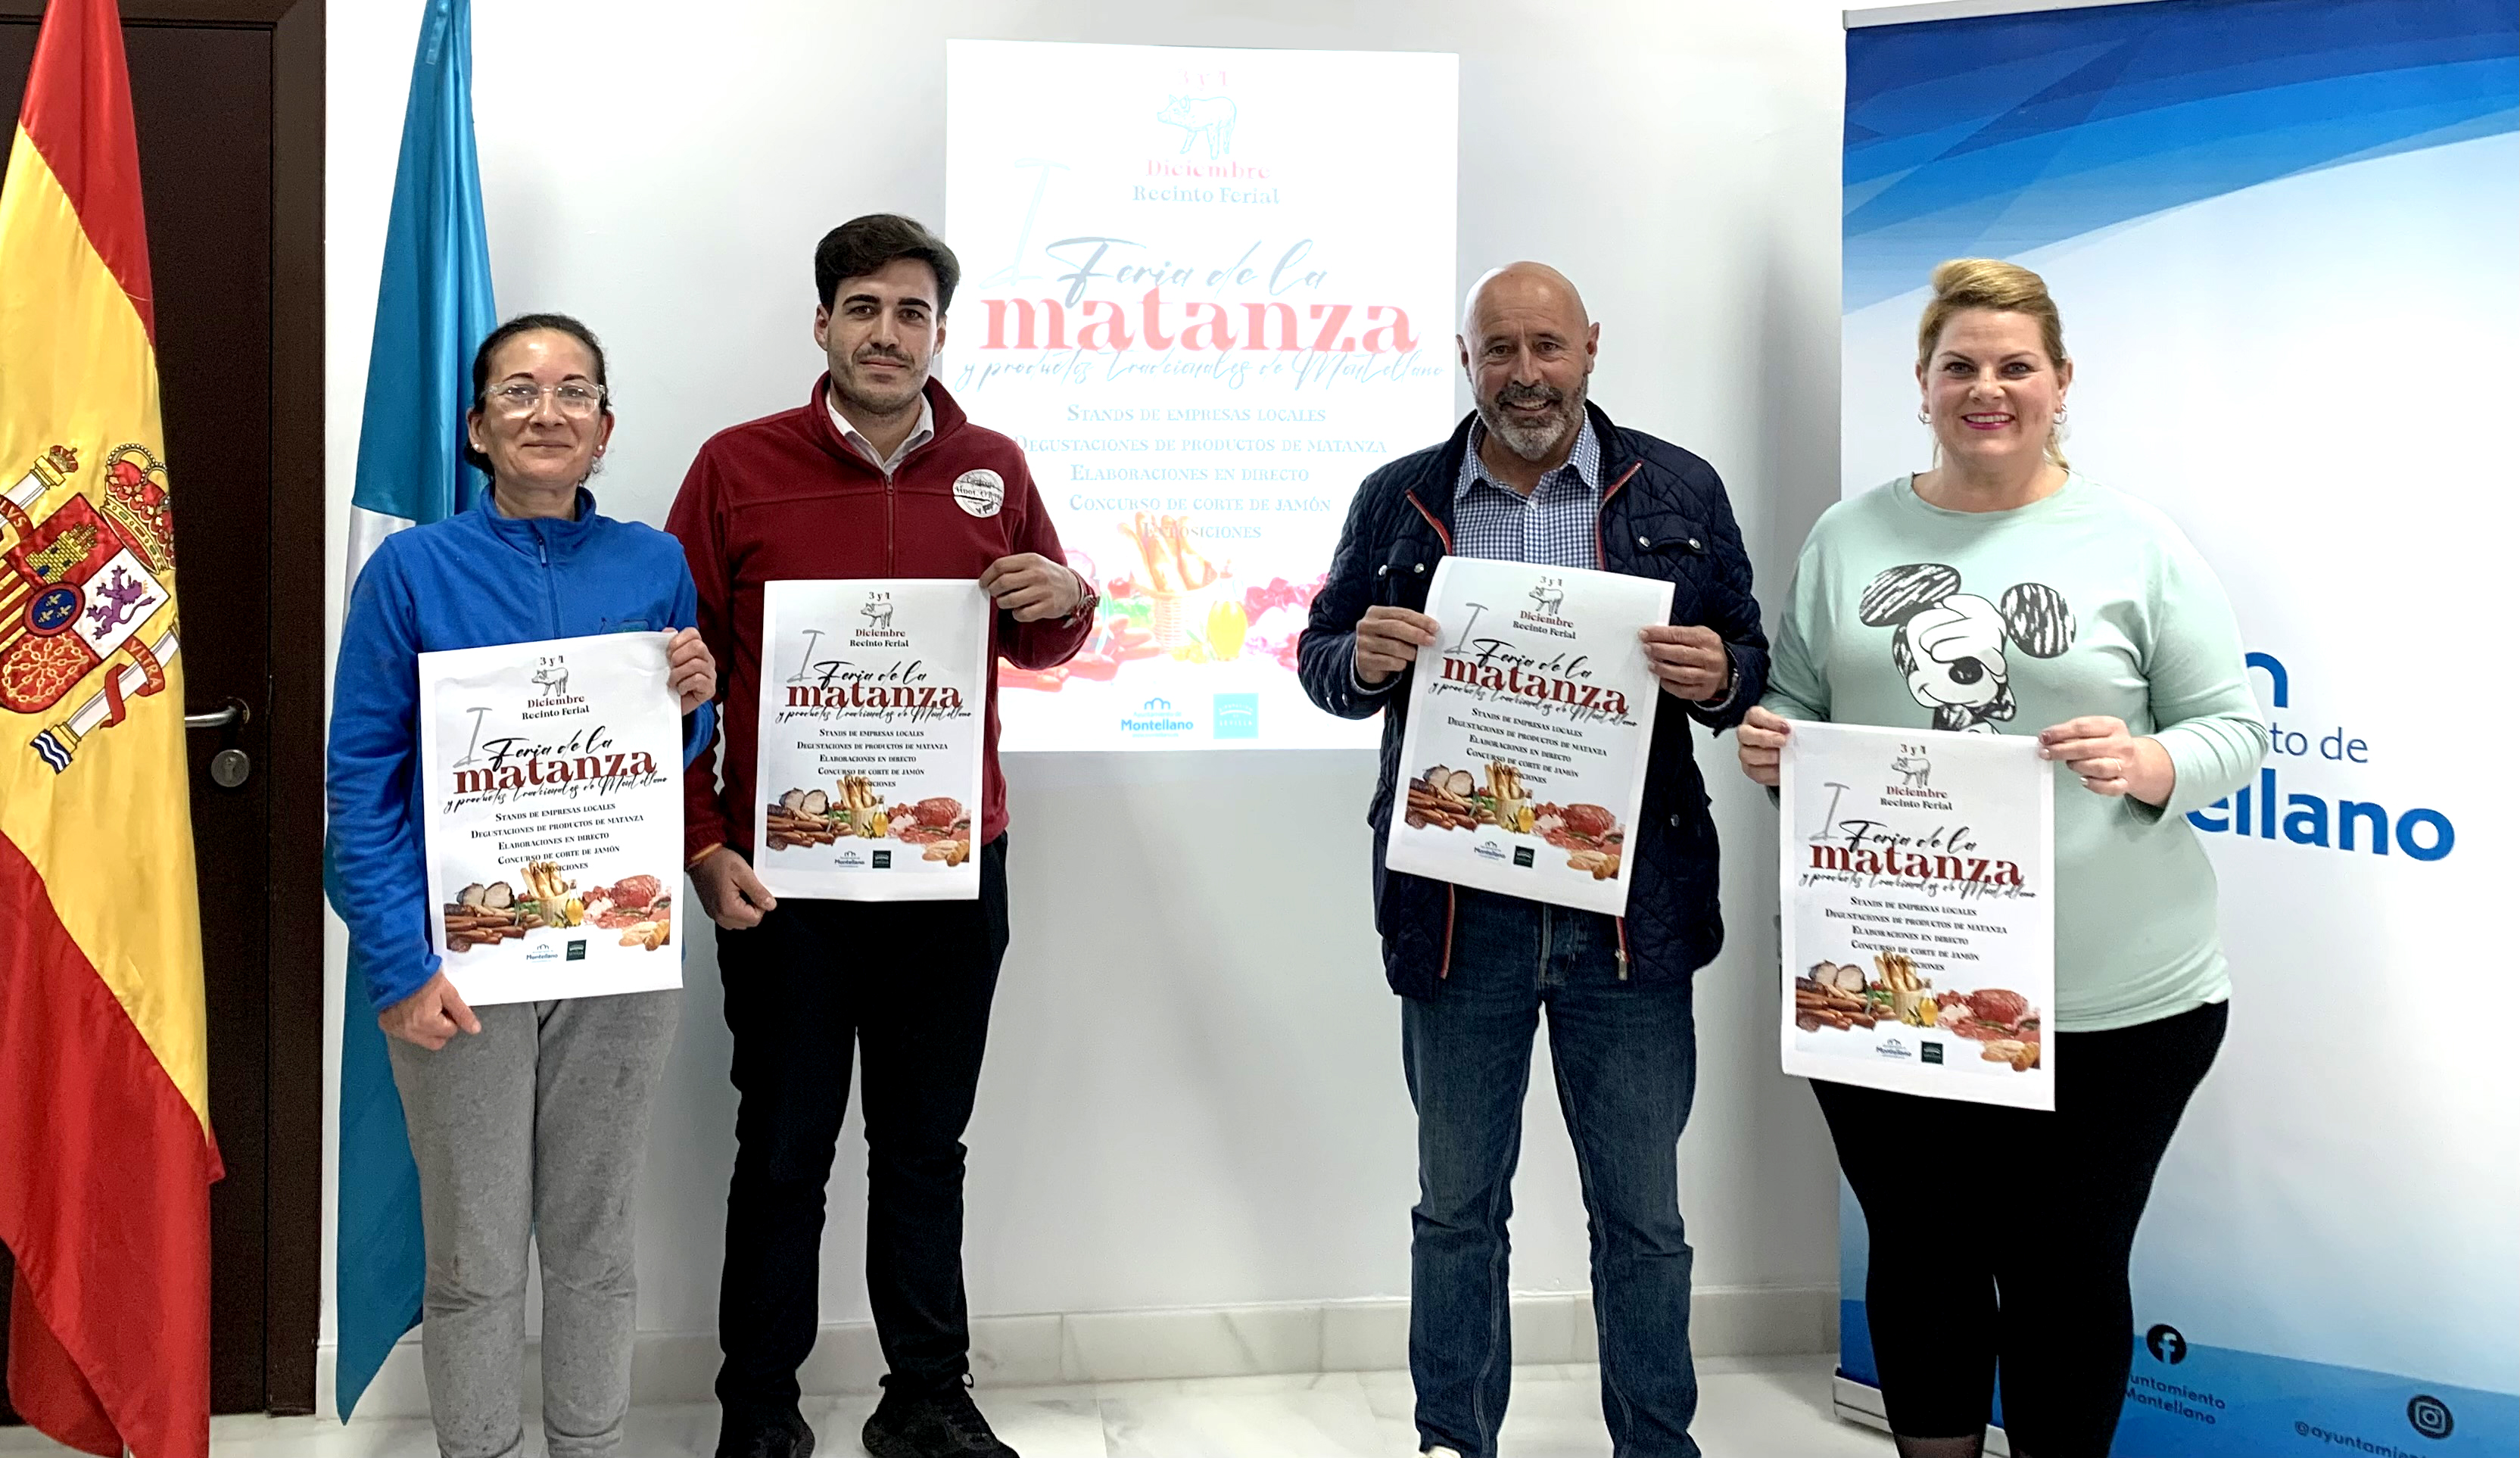 FERIA DE LA MATANZA_ El Alcalde presenta el cartel junto a las tres carnicerias participantes